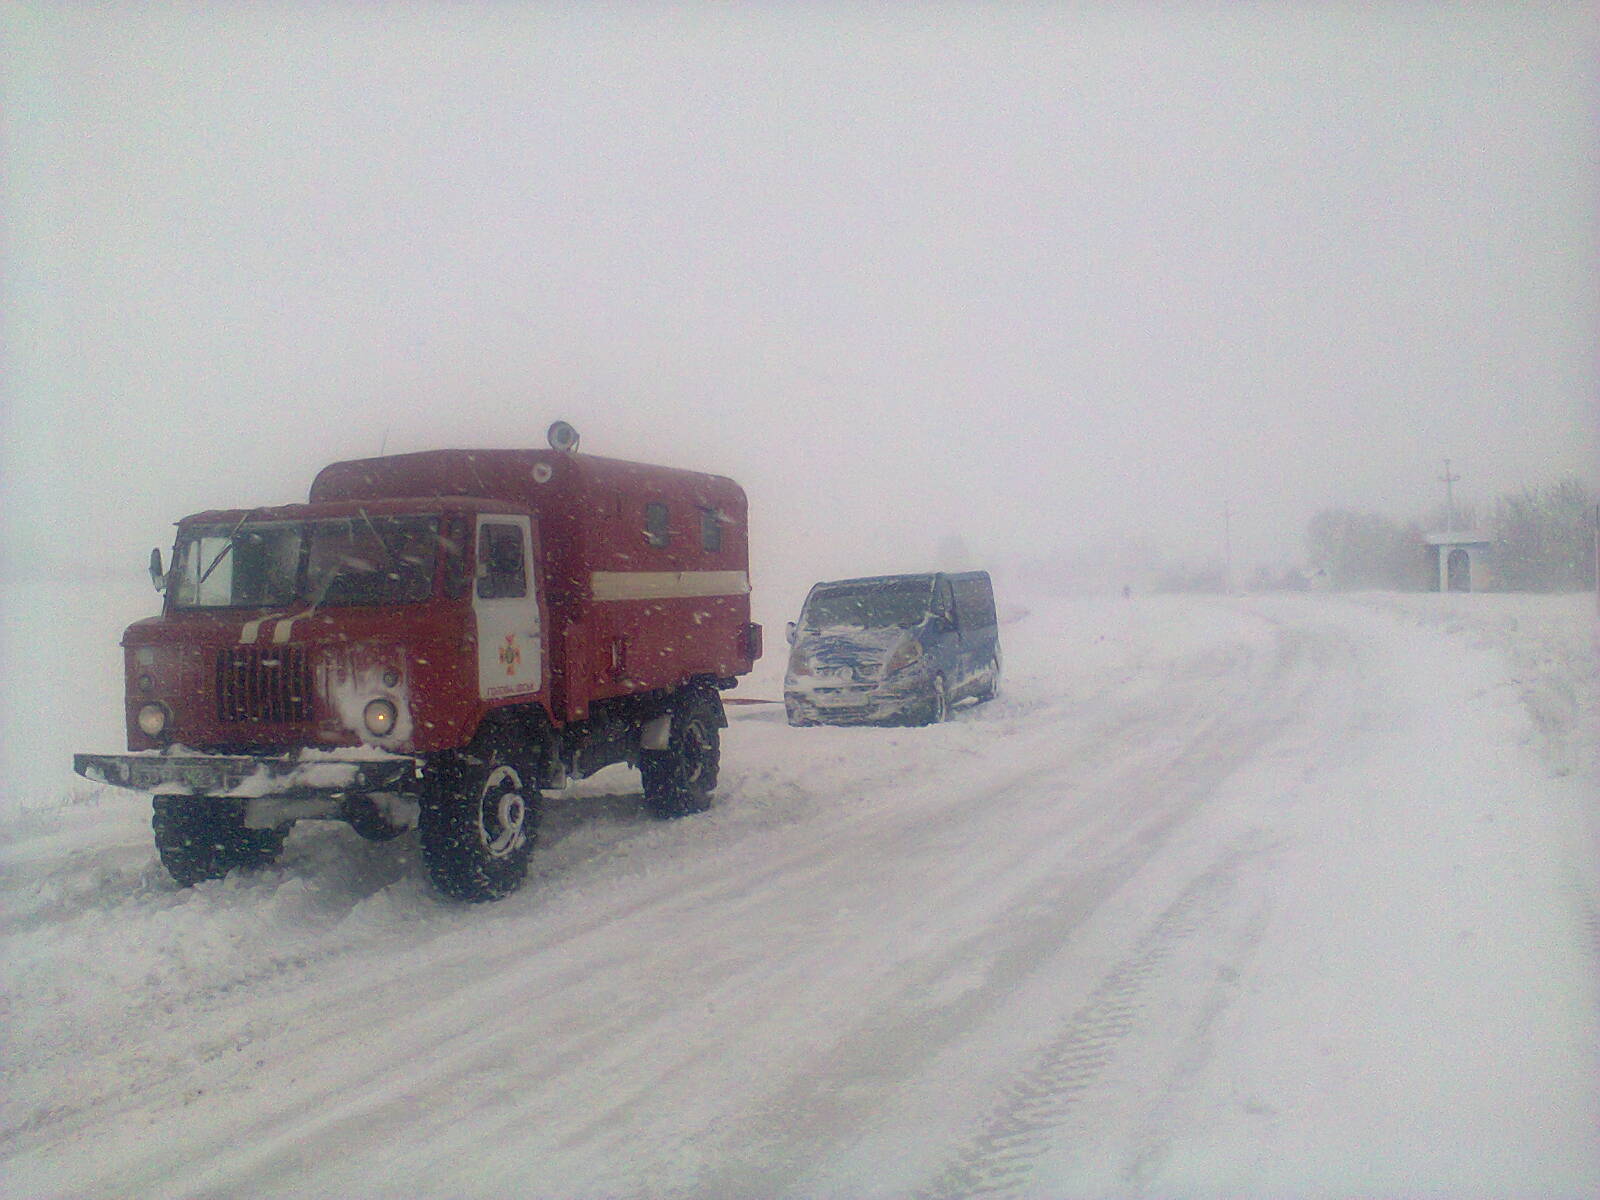 Рятувальники Кіровоградщини витягнули з заметів майже 200 автомобілів. ФОТО